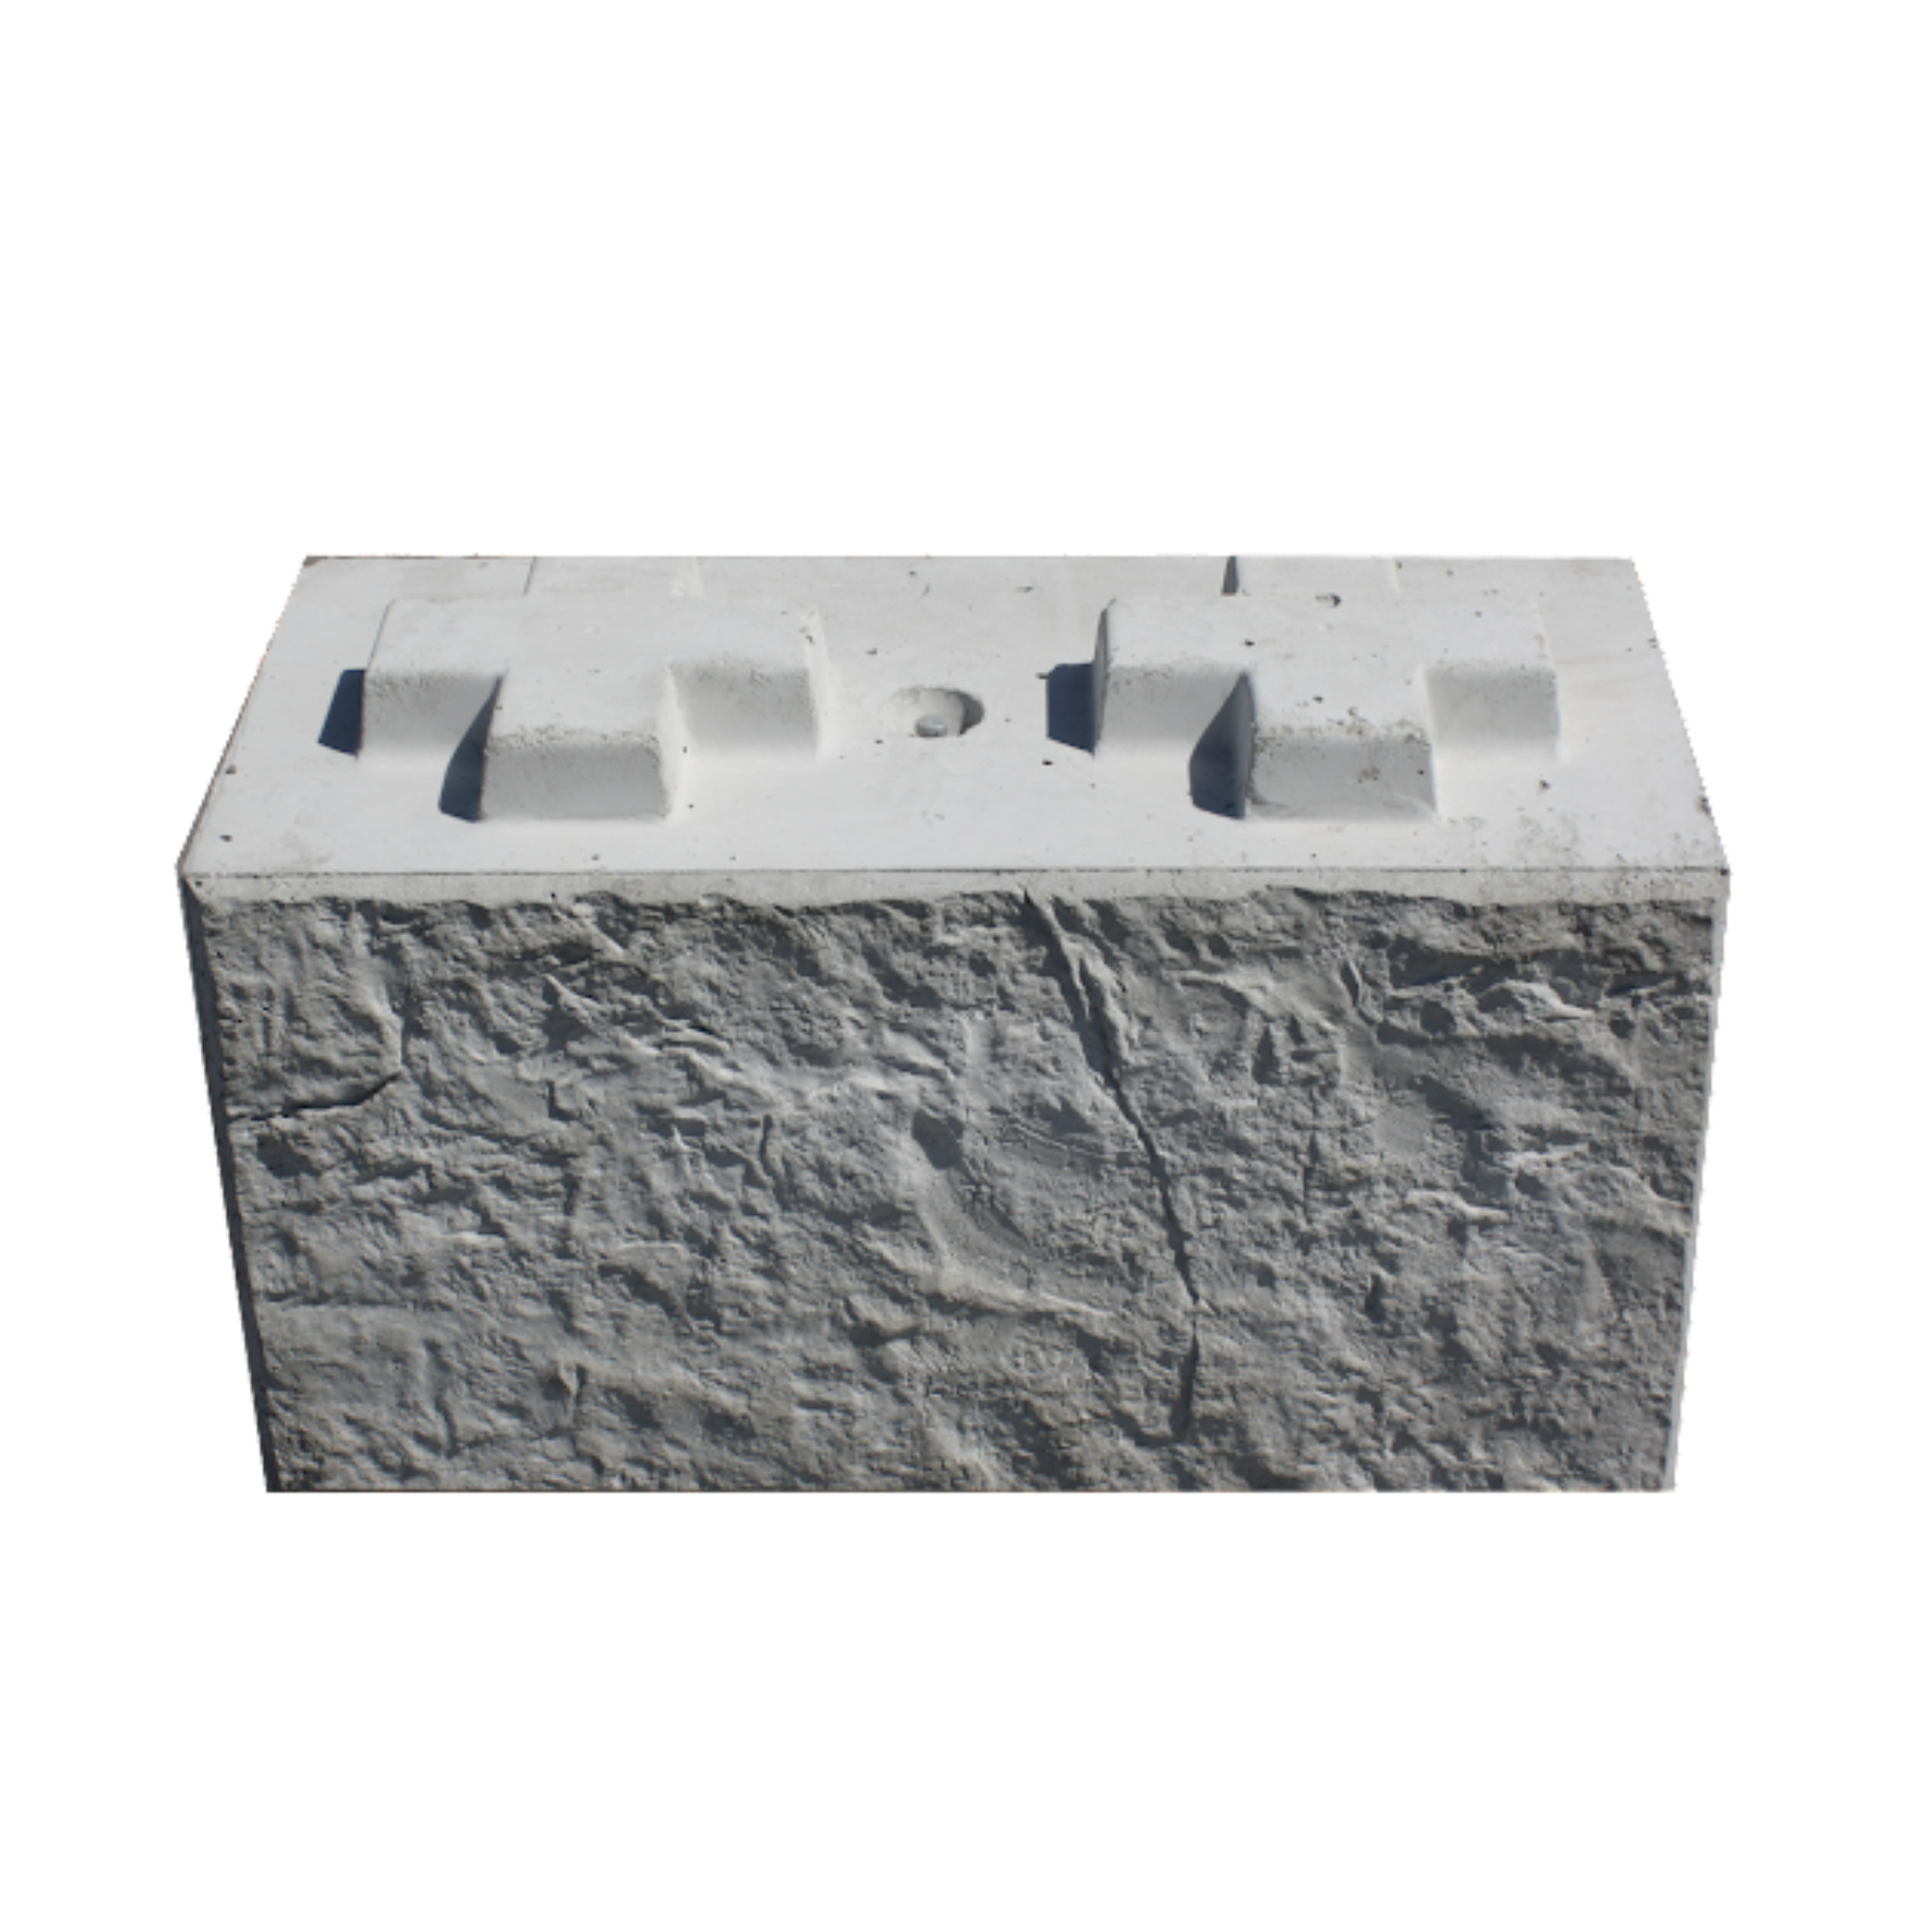 Front view of a 800 Standard Stonebloc concrete block